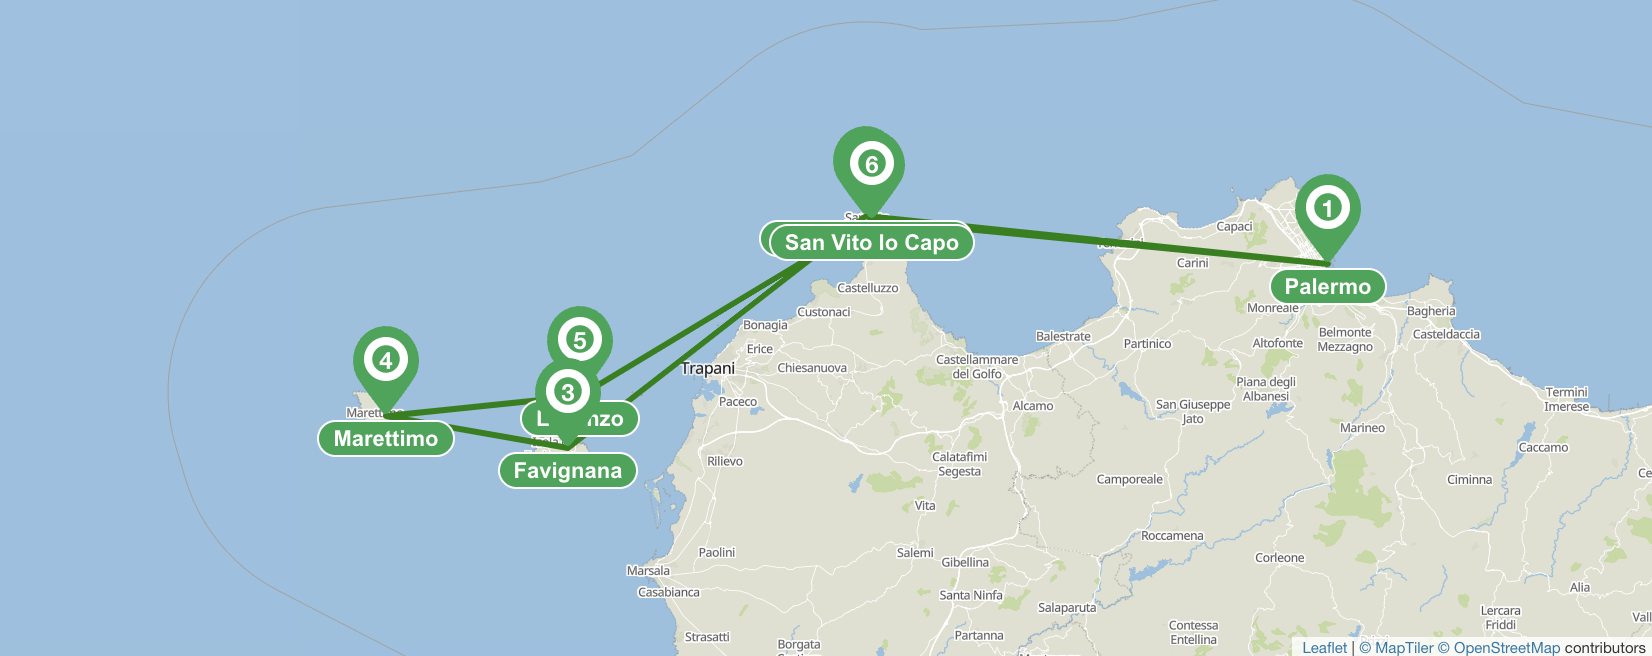 De Palerme aux îles Egadi - itinéraire de navigation de 7 jours